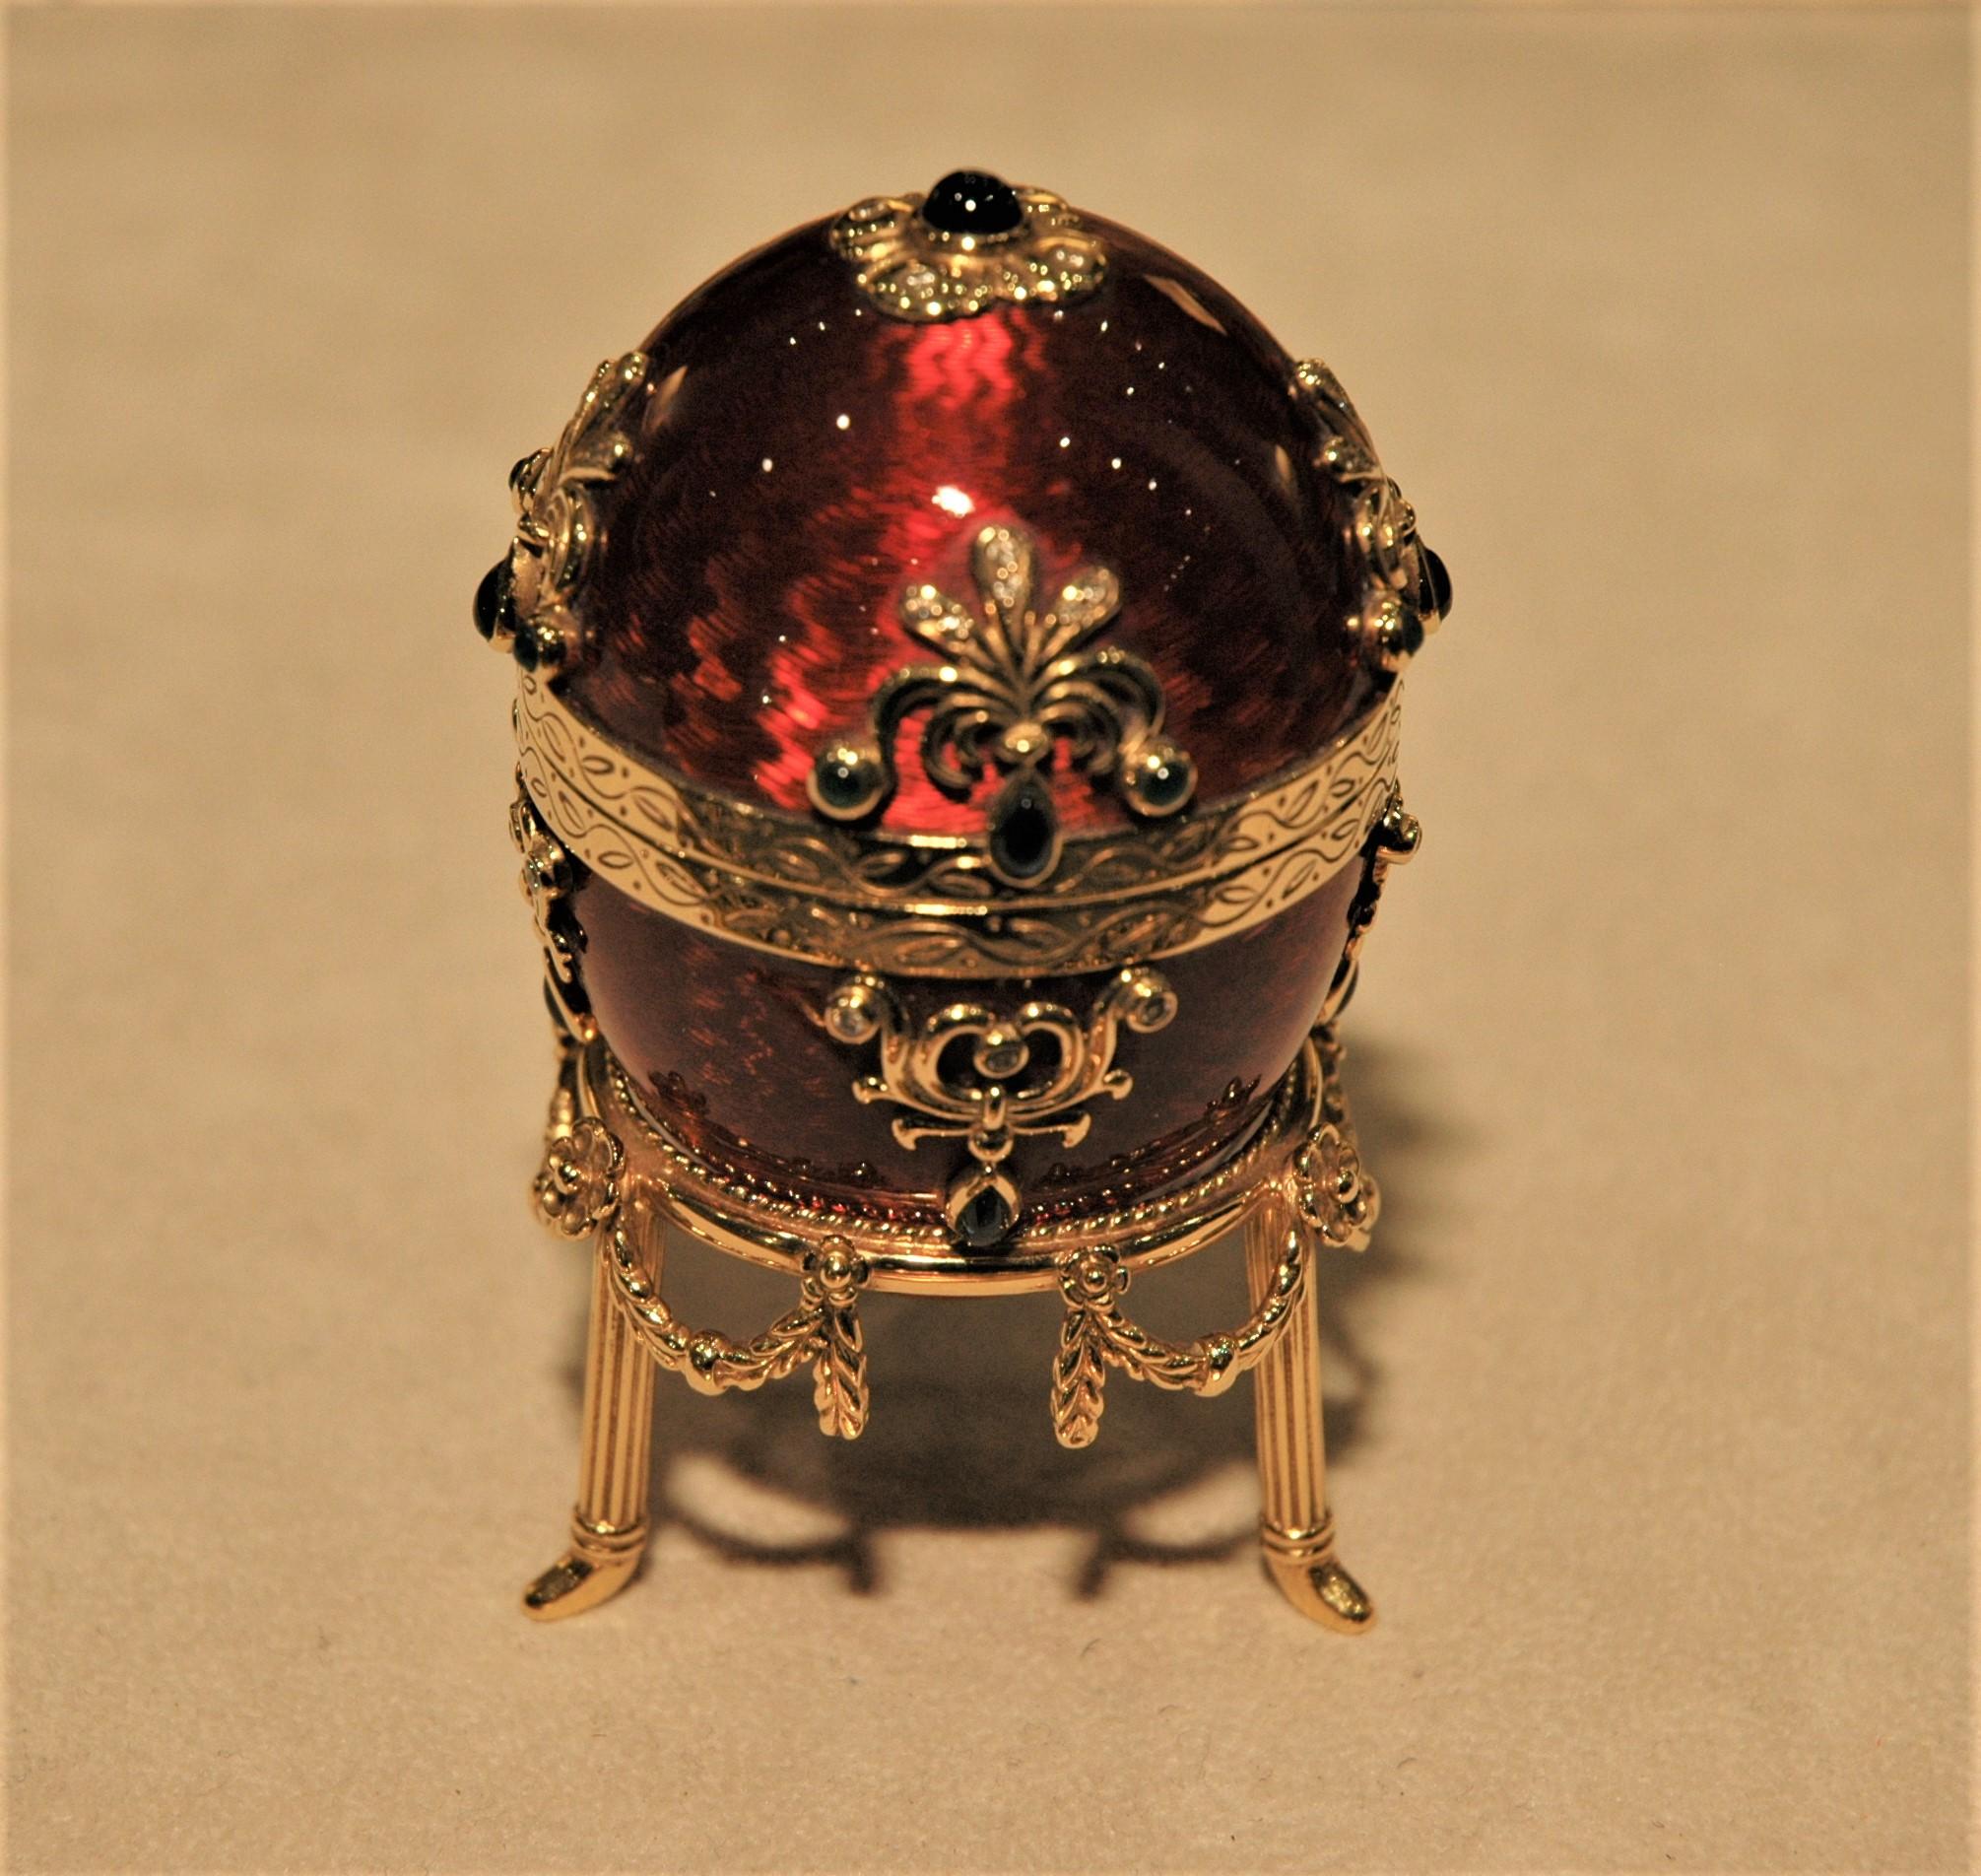 Seltenes Fabergé-Gold-Ei mit Goldständer. Es ist mit roter Guilloche-Emaille und Edelsteinen verziert: Smaragde (0,40 Karat), Saphire (3,15 Karat), Diamanten (0,56 Karat). Sie ist zu öffnen und man kann einen speziellen Ring hineinstecken. Es ist